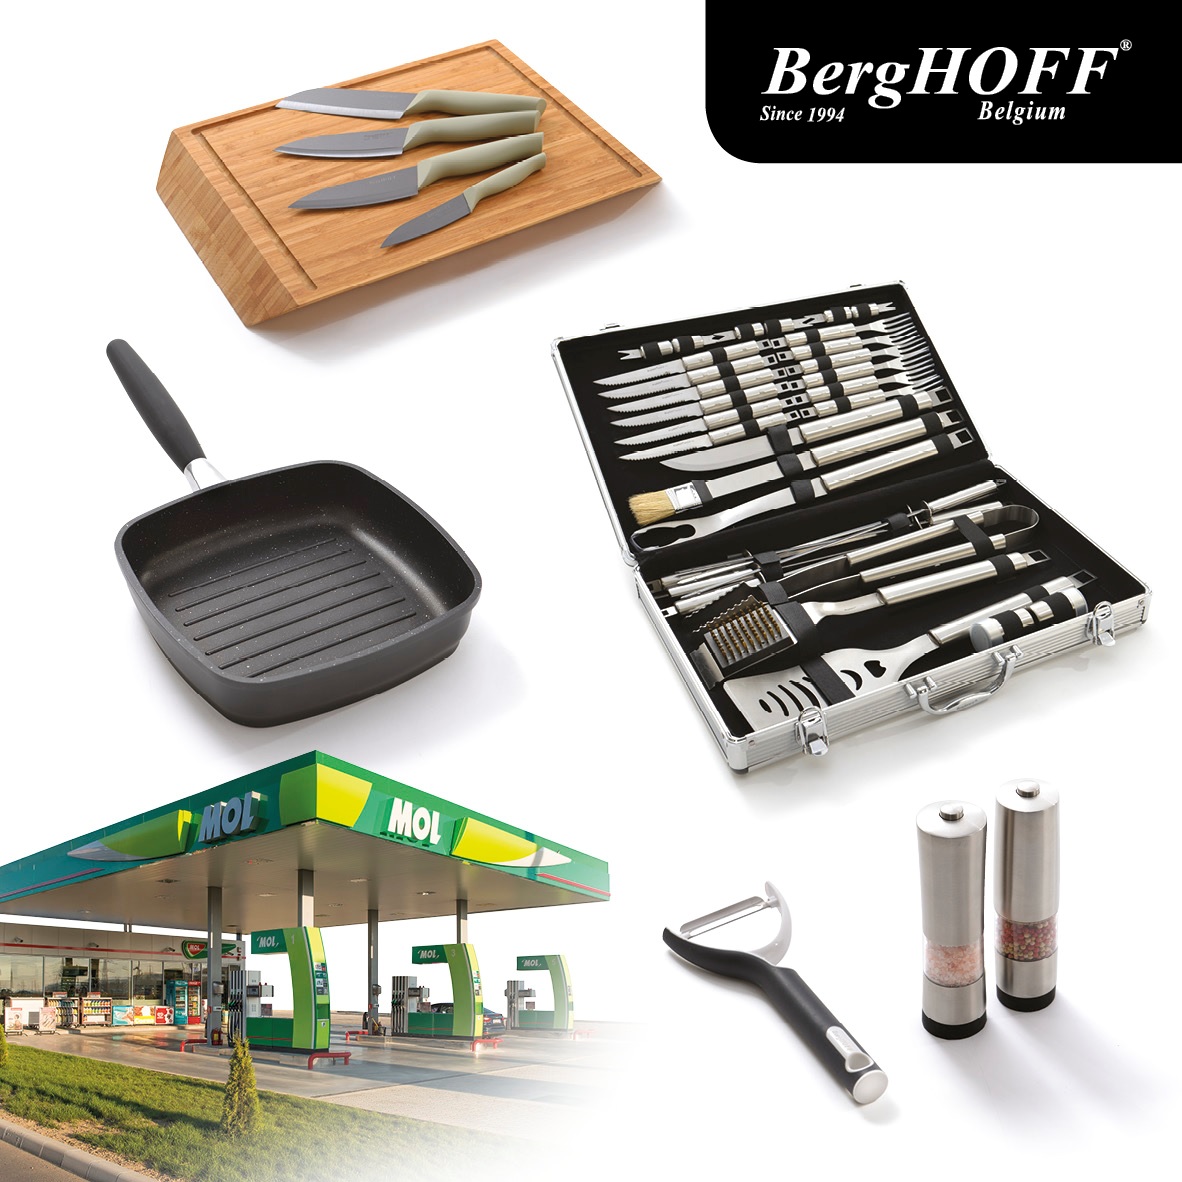 (P) MOL România oferă instrumente de gătit BergHOFF  la prețuri promoționale